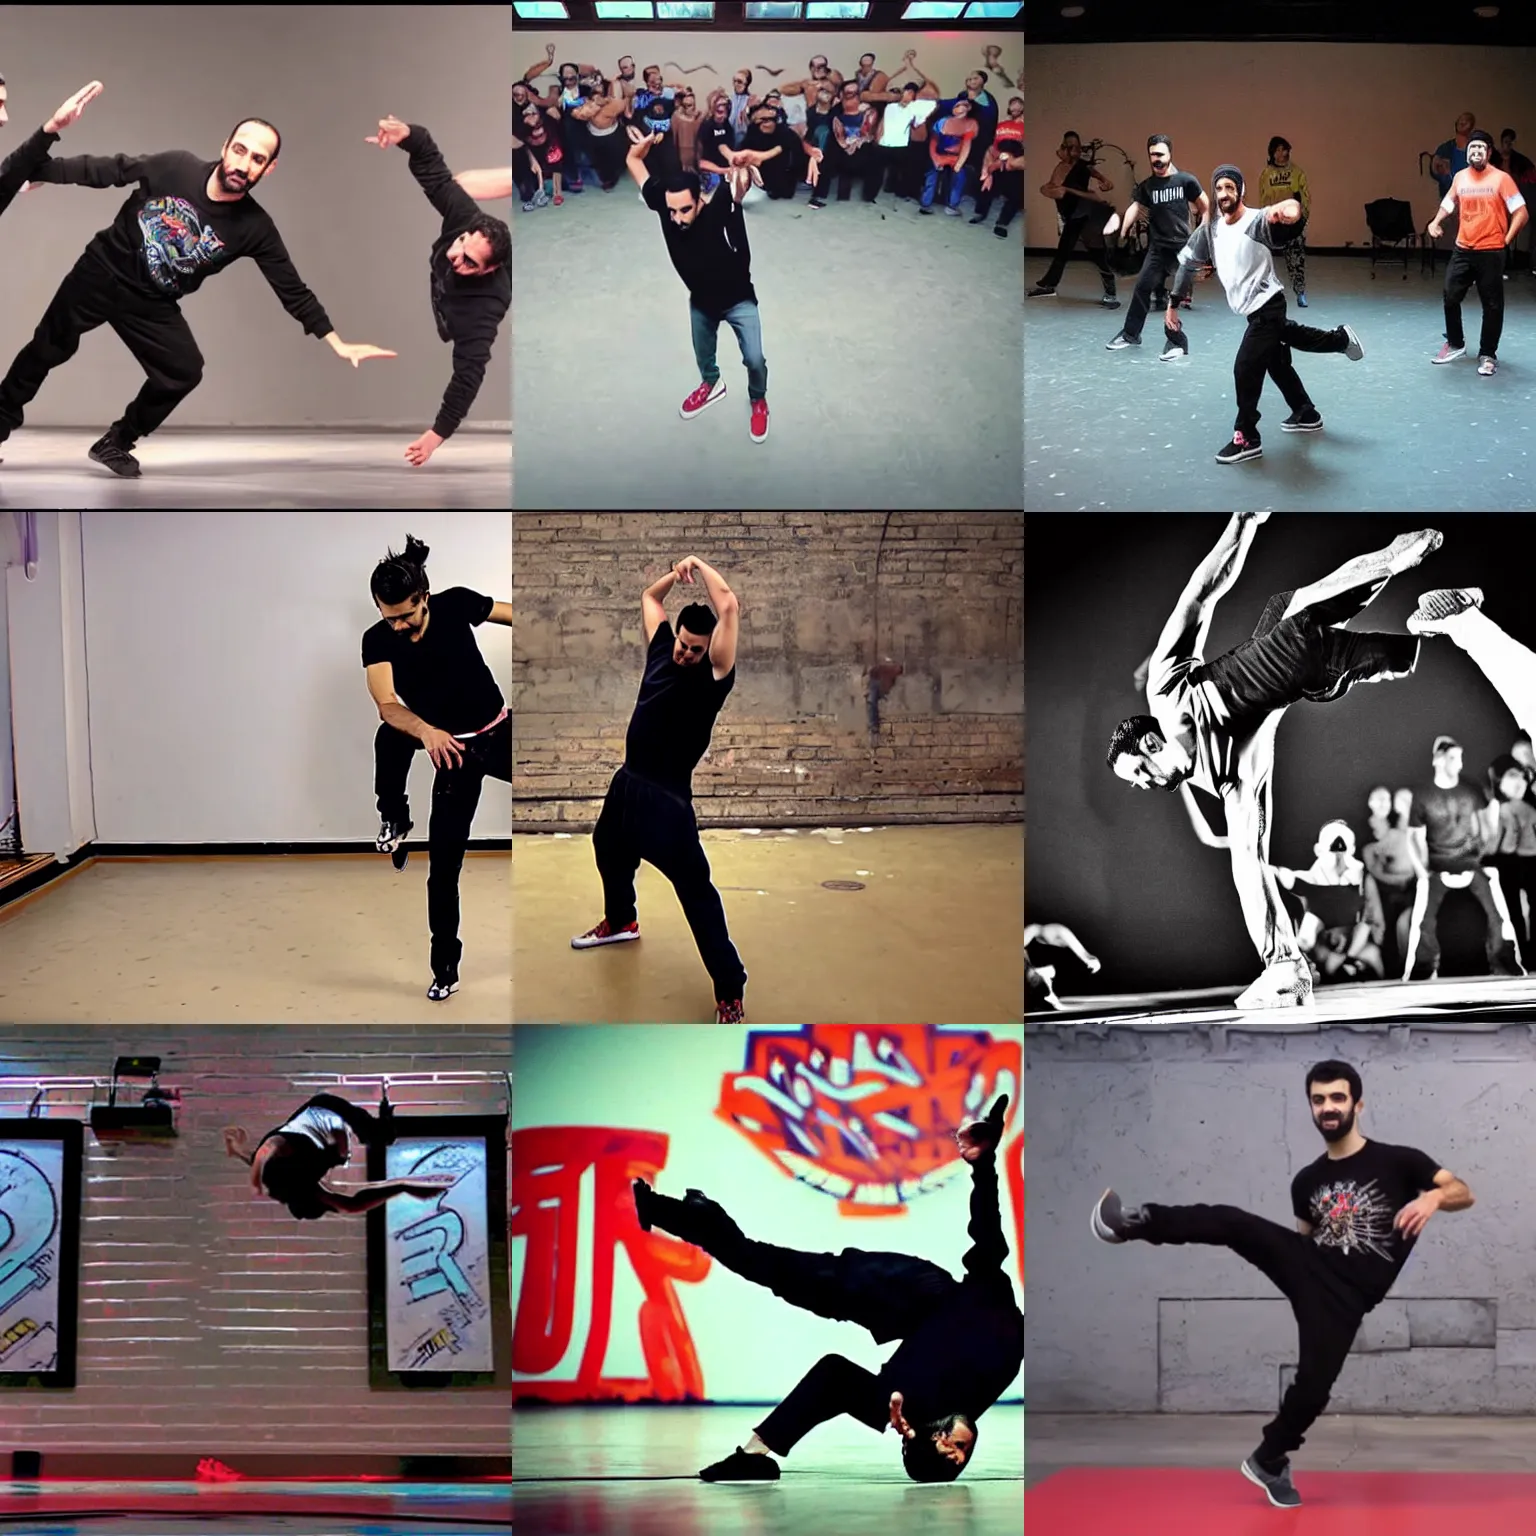 Prompt: breakdancer gev manoukian - break dancing - hip hop dancing